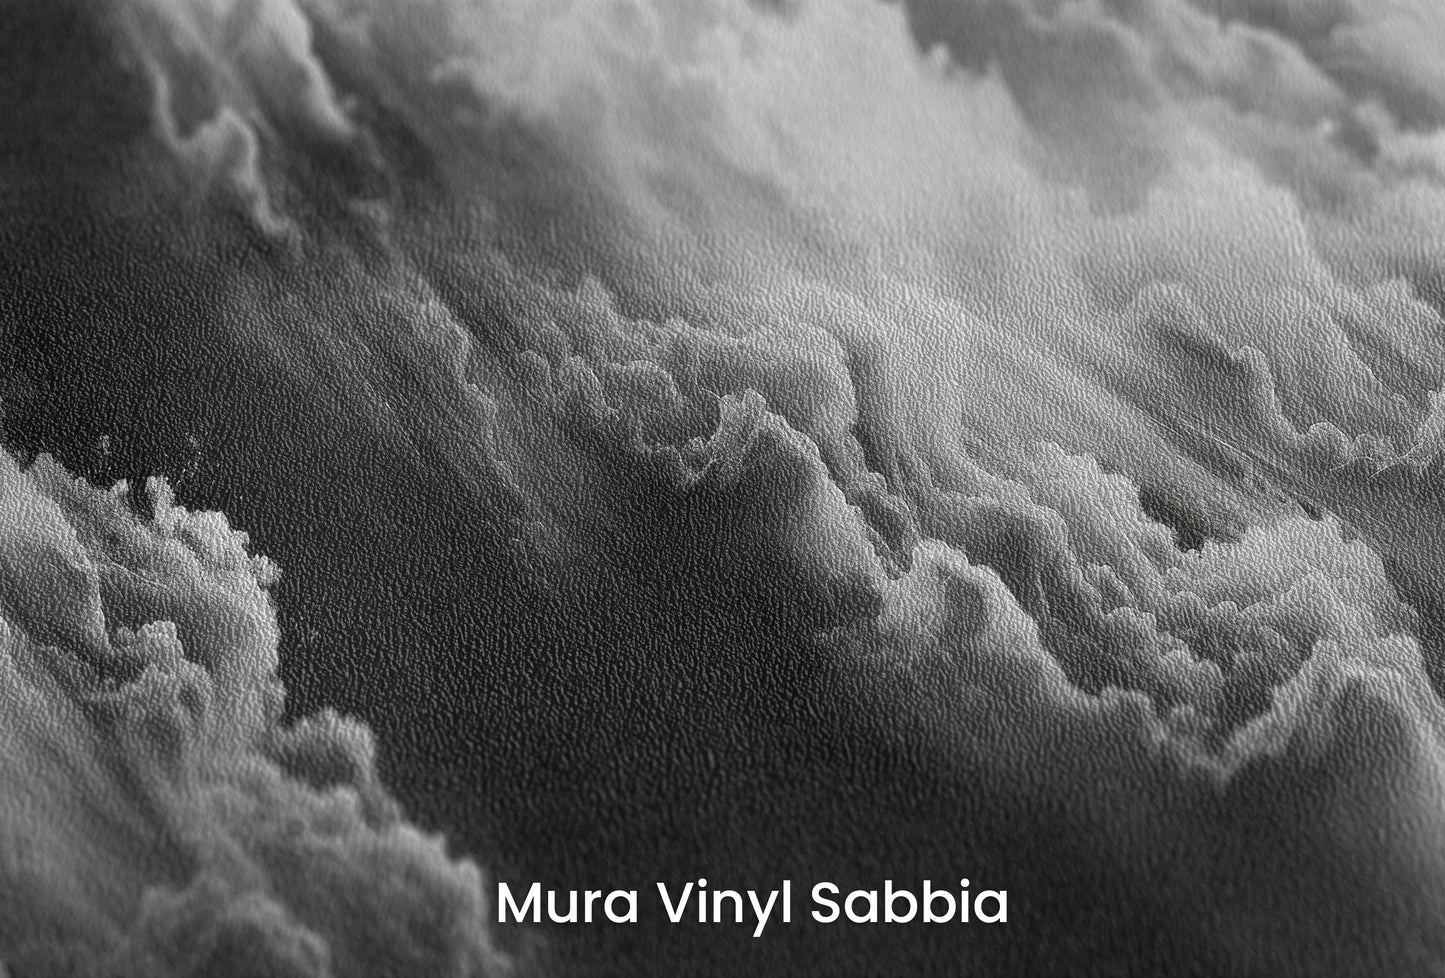 Zbliżenie na artystyczną fototapetę o nazwie Whispering Mists na podłożu Mura Vinyl Sabbia struktura grubego ziarna piasku.